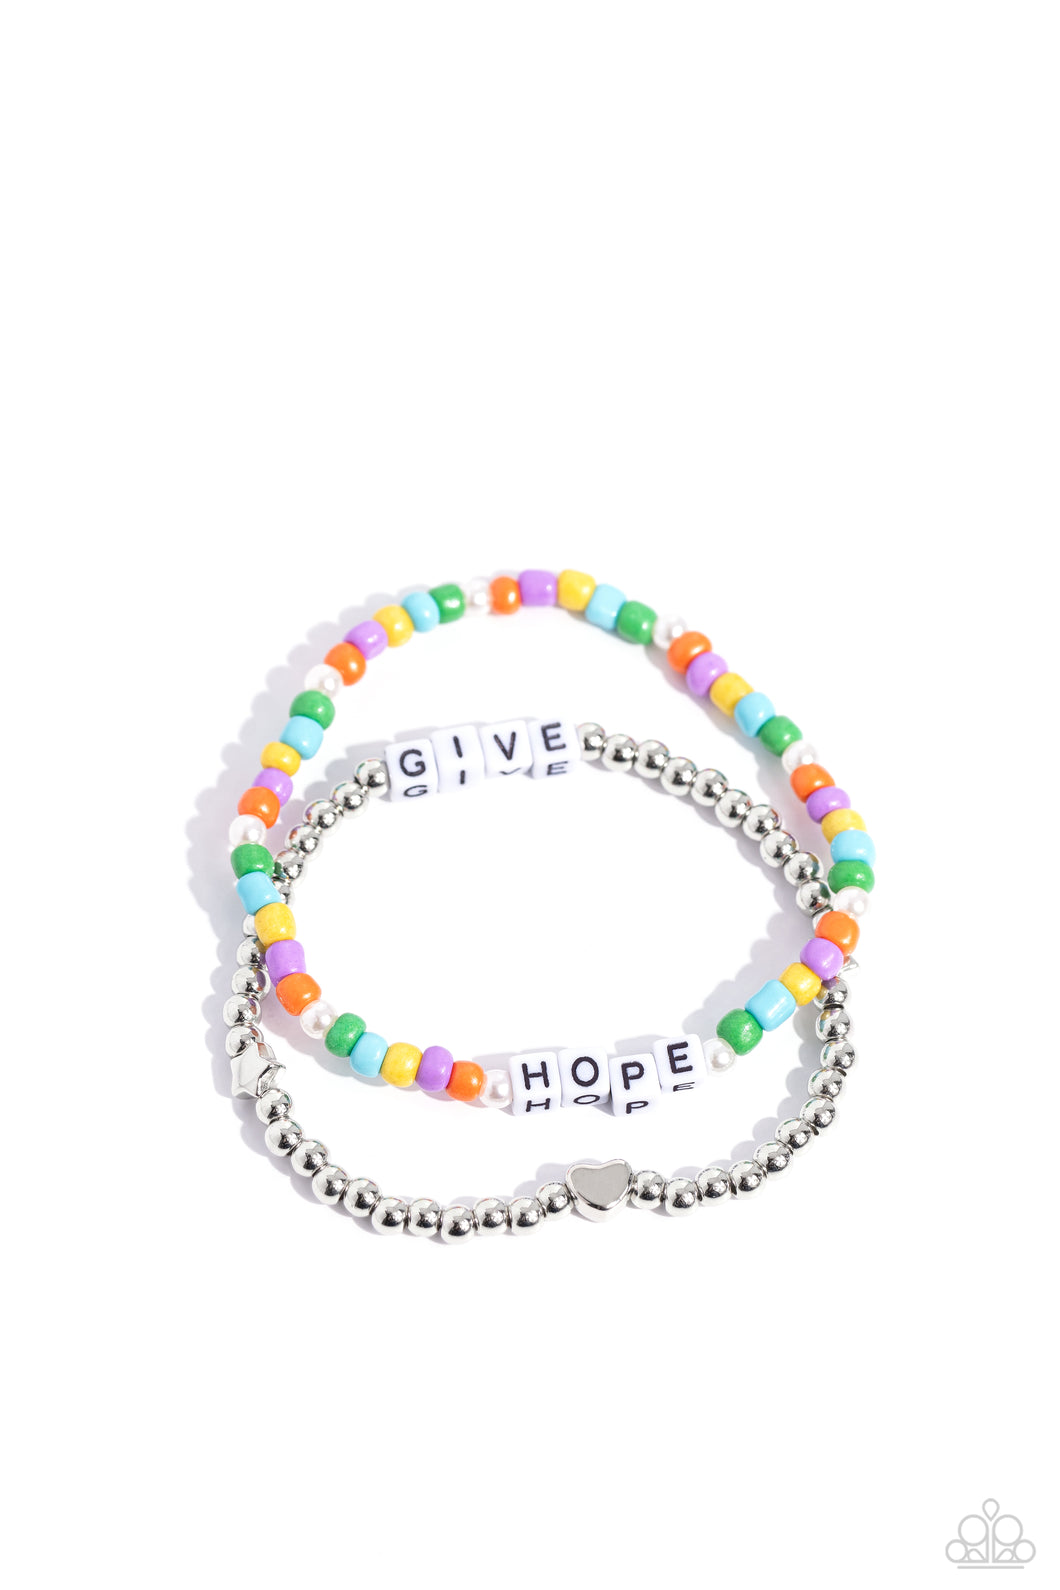 Giving Hope - Multi Bracelets